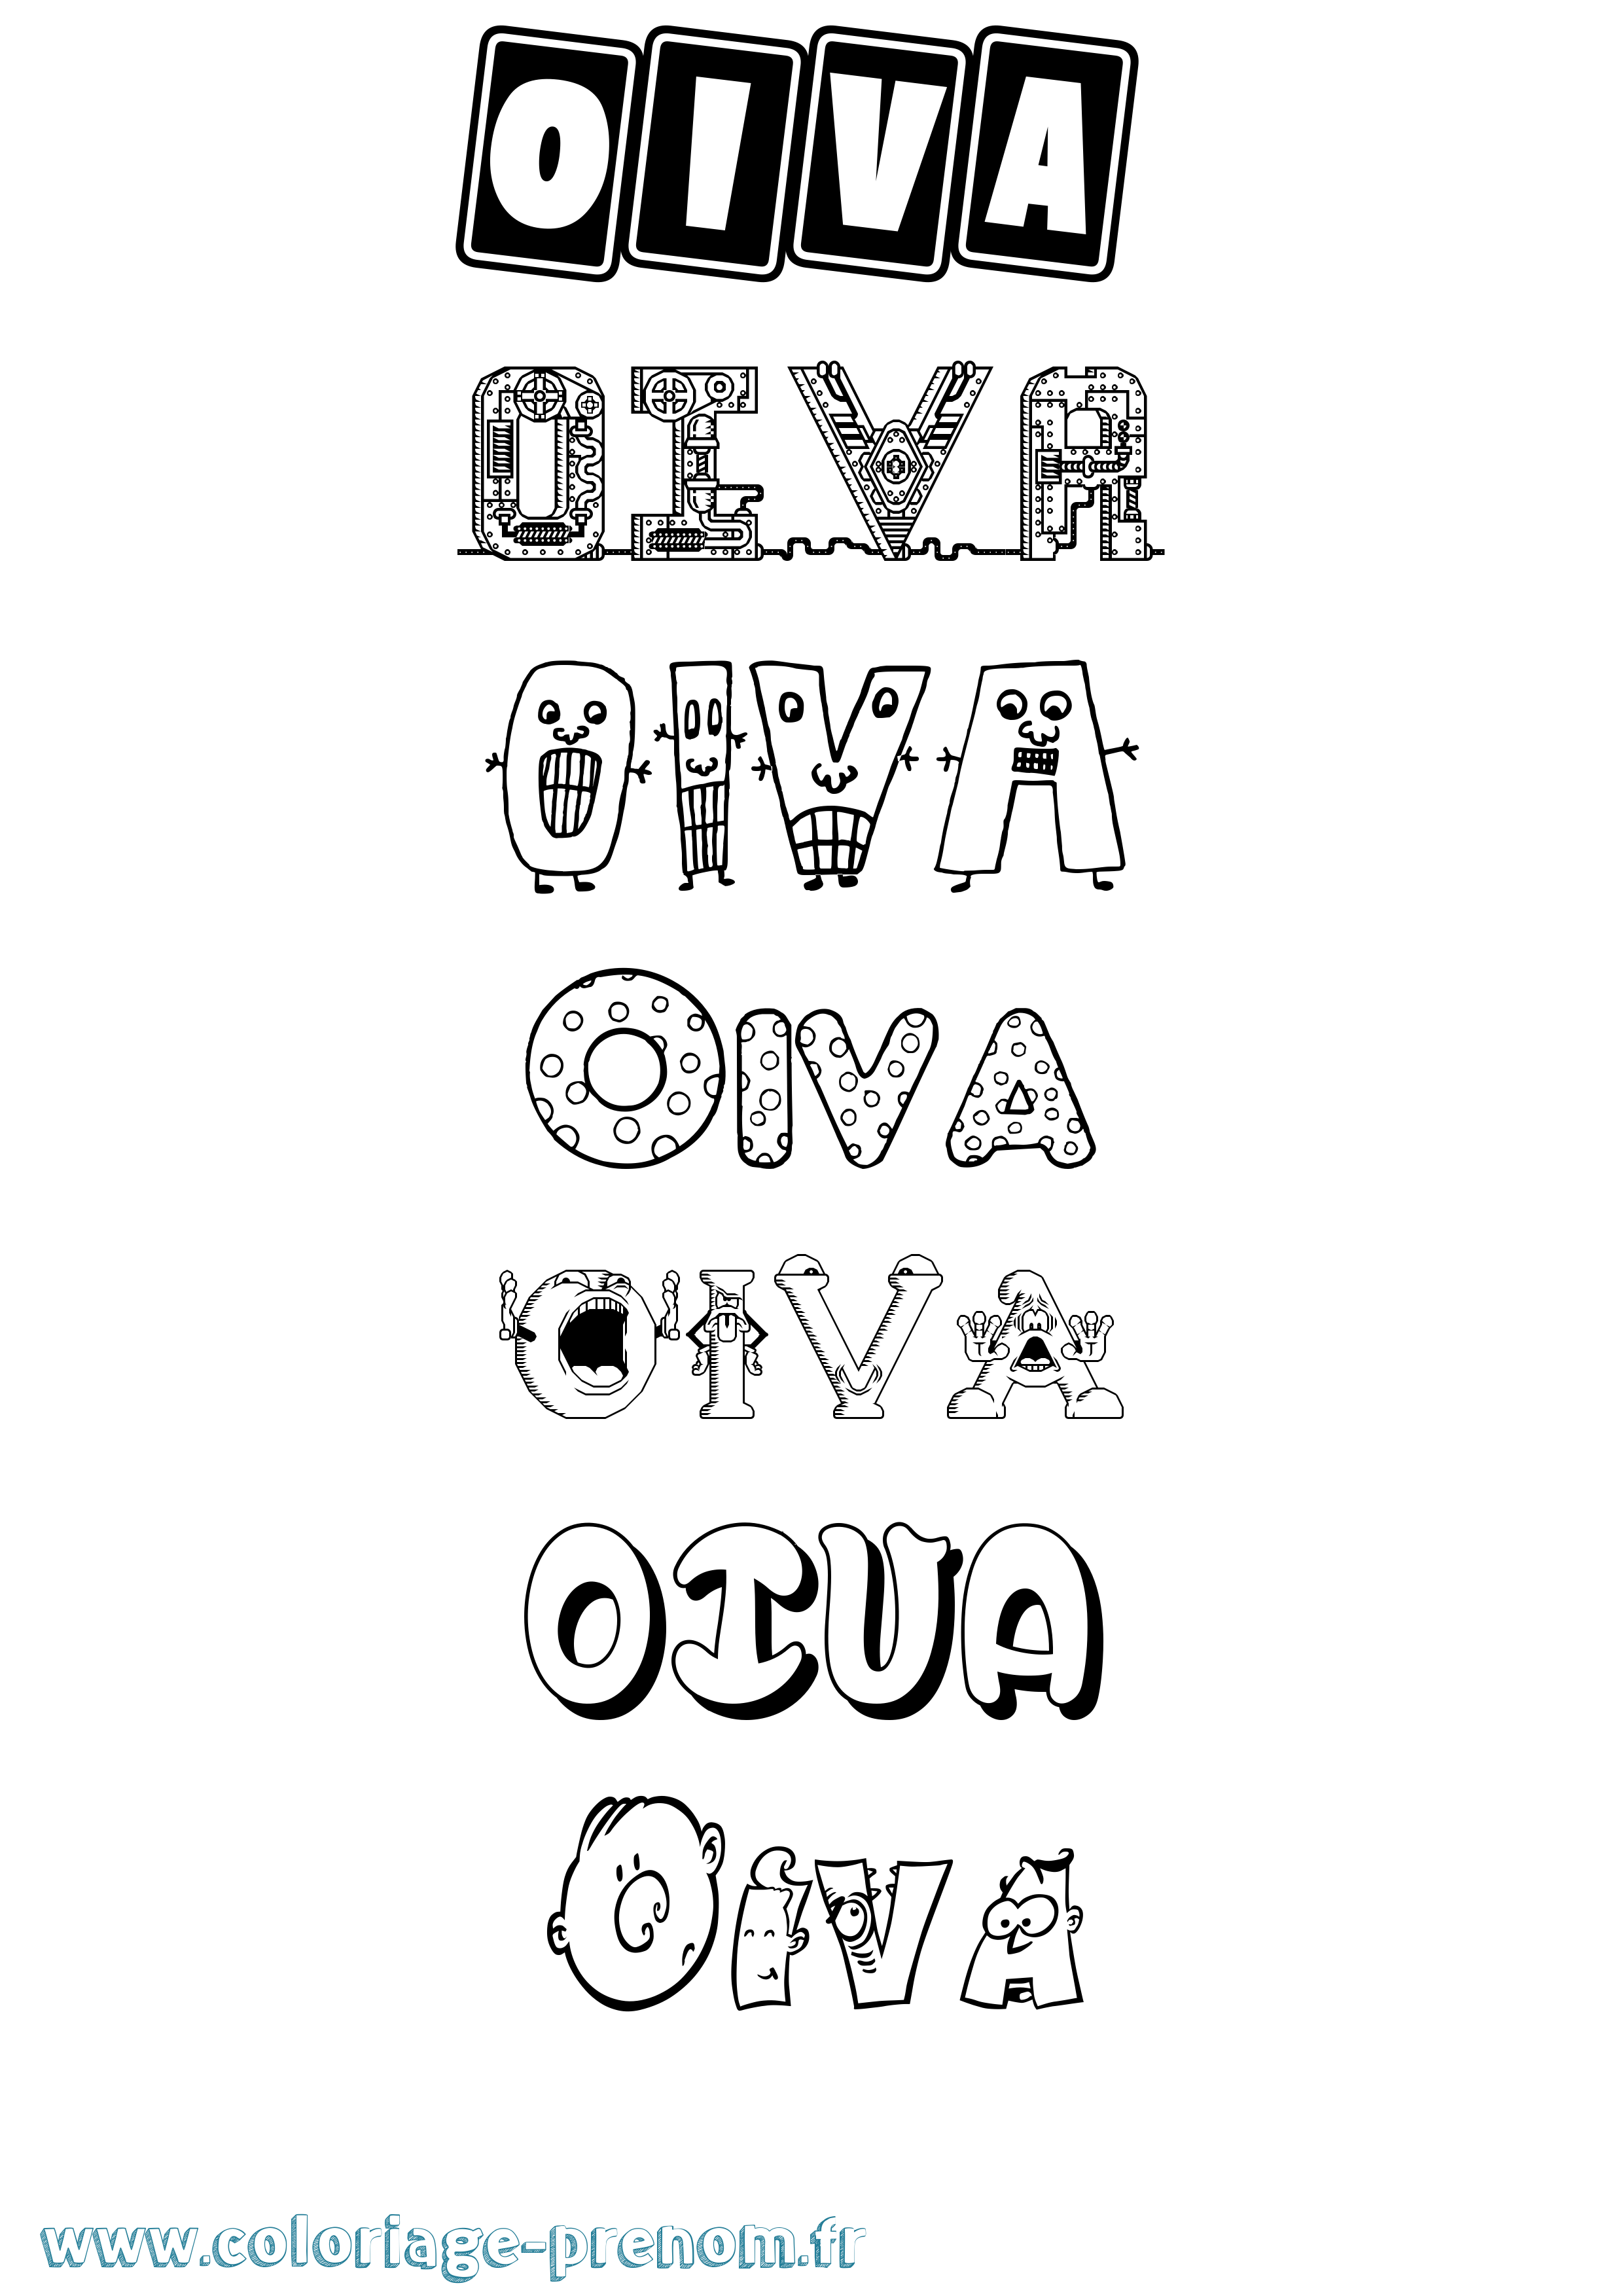 Coloriage prénom Oiva Fun